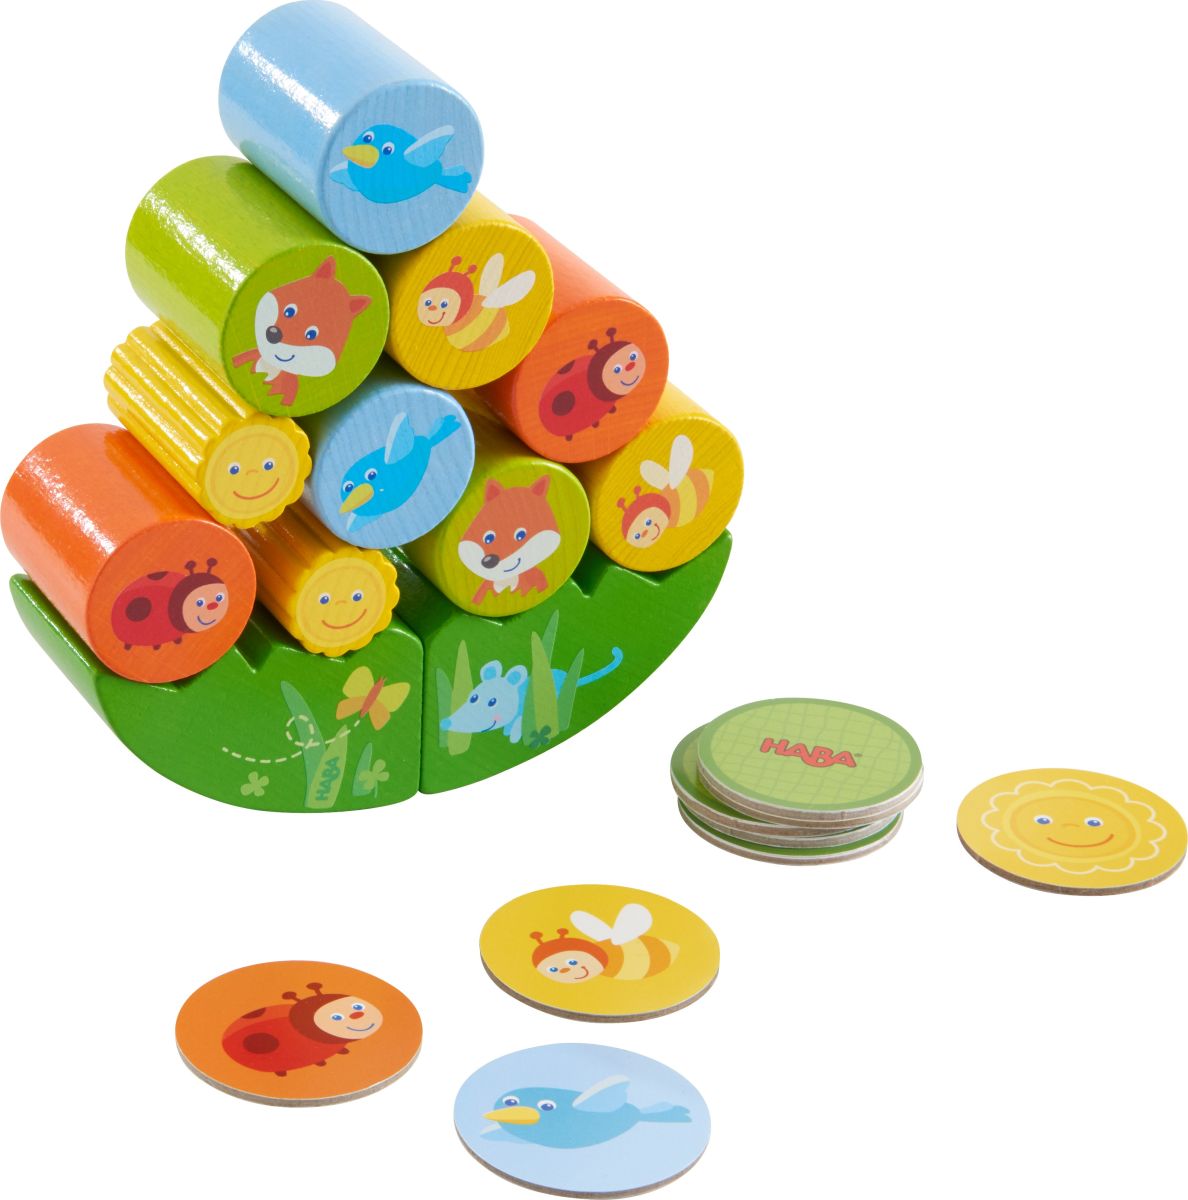 Spielzeug für frühkindliches Lernen Stapel Stapelspiel Fuchs und Bauspielzeug 